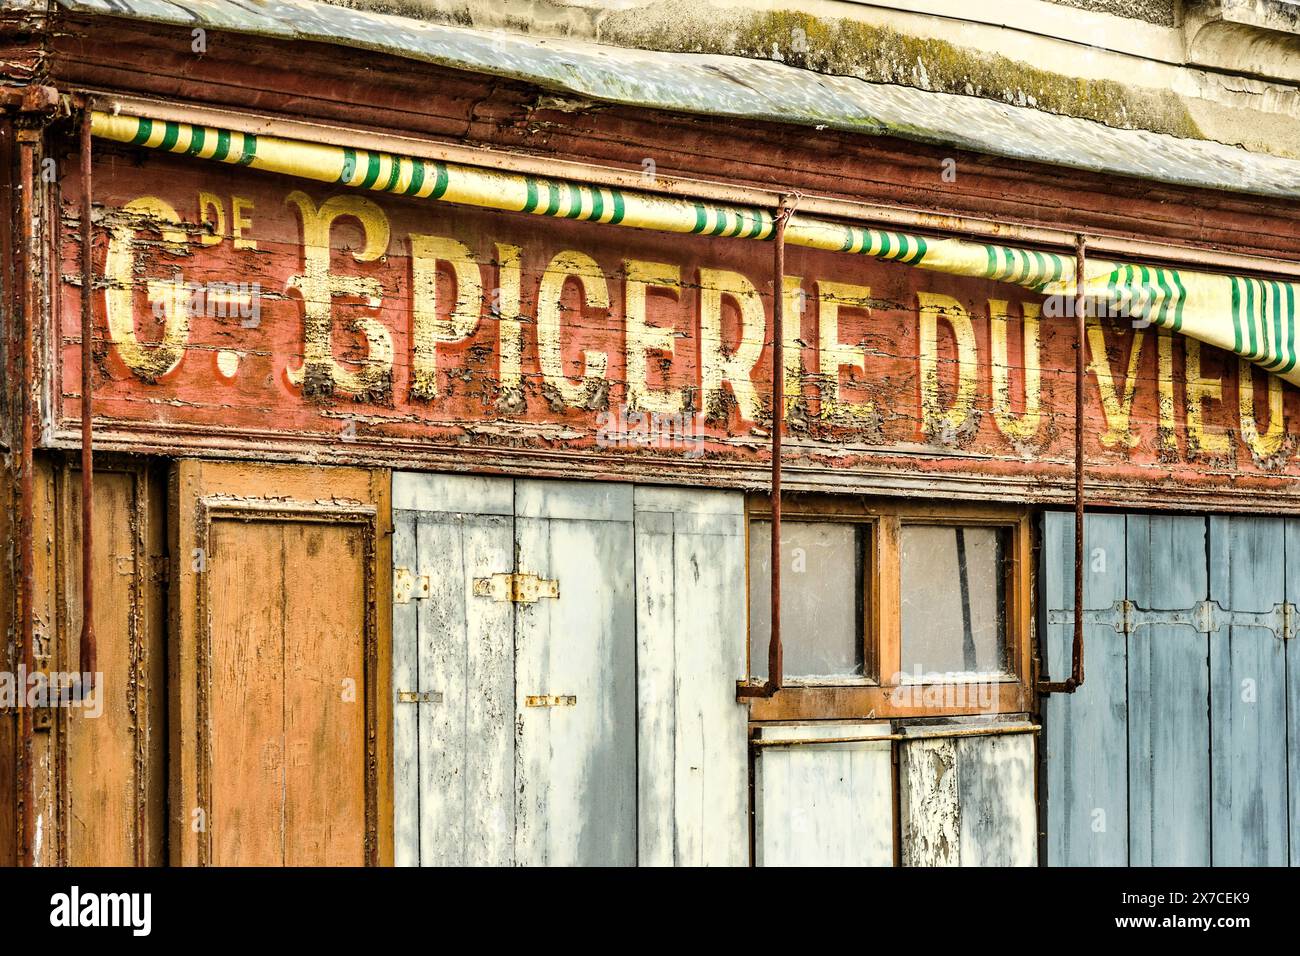 Attività di vendita di beni generici chiusa e imbarcata - Argenton-sur-Creuse, Indre (36), Francia. Foto Stock